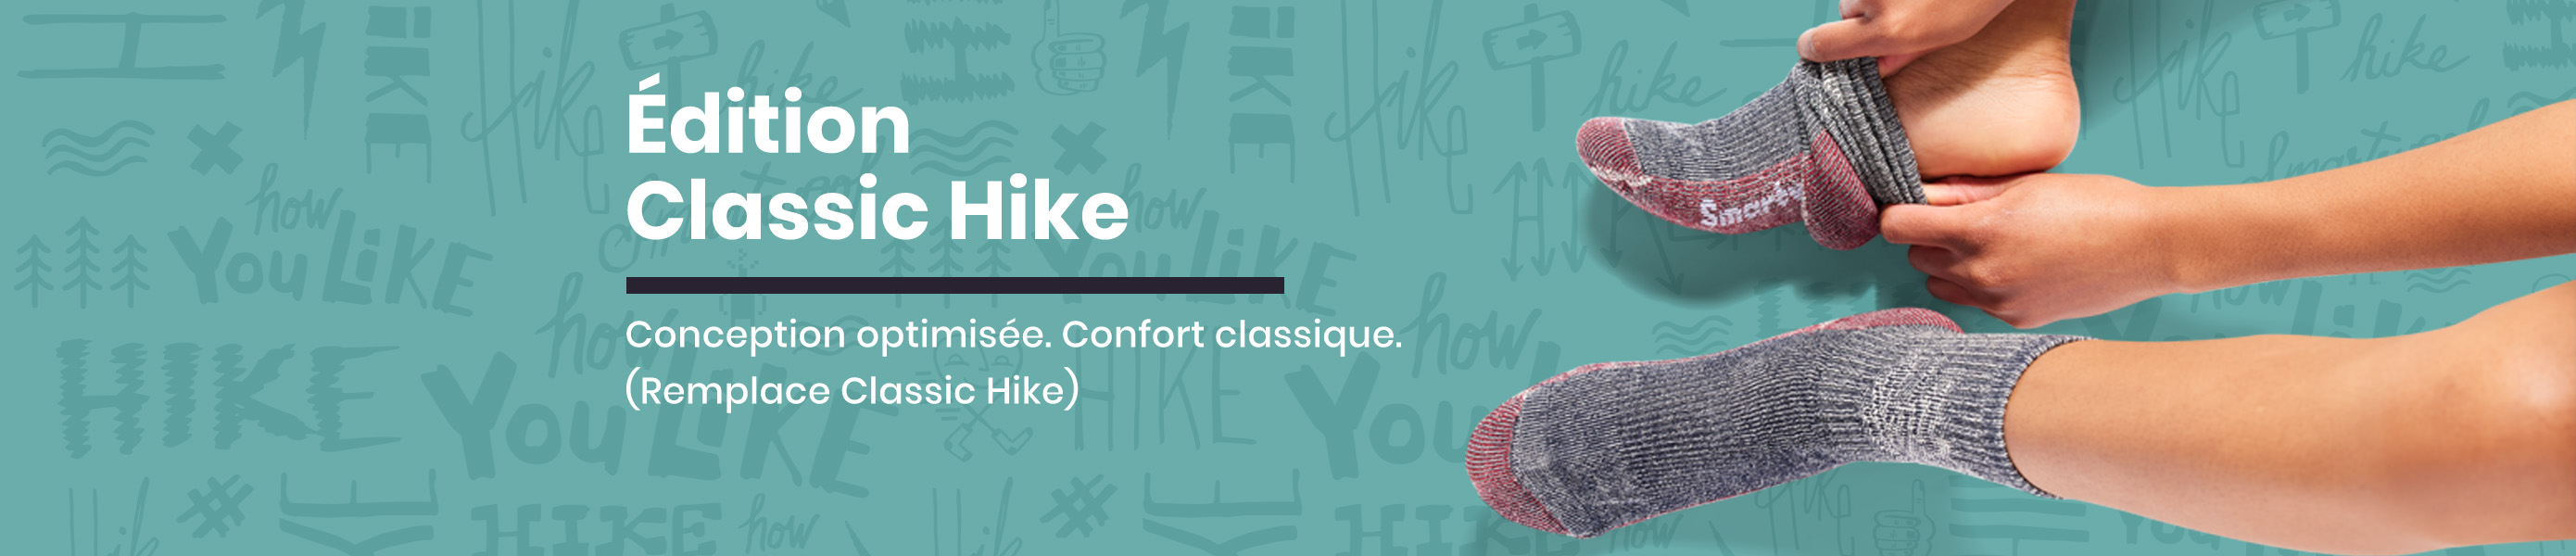 Chaussettes Hike Classic Edition pour Femmes